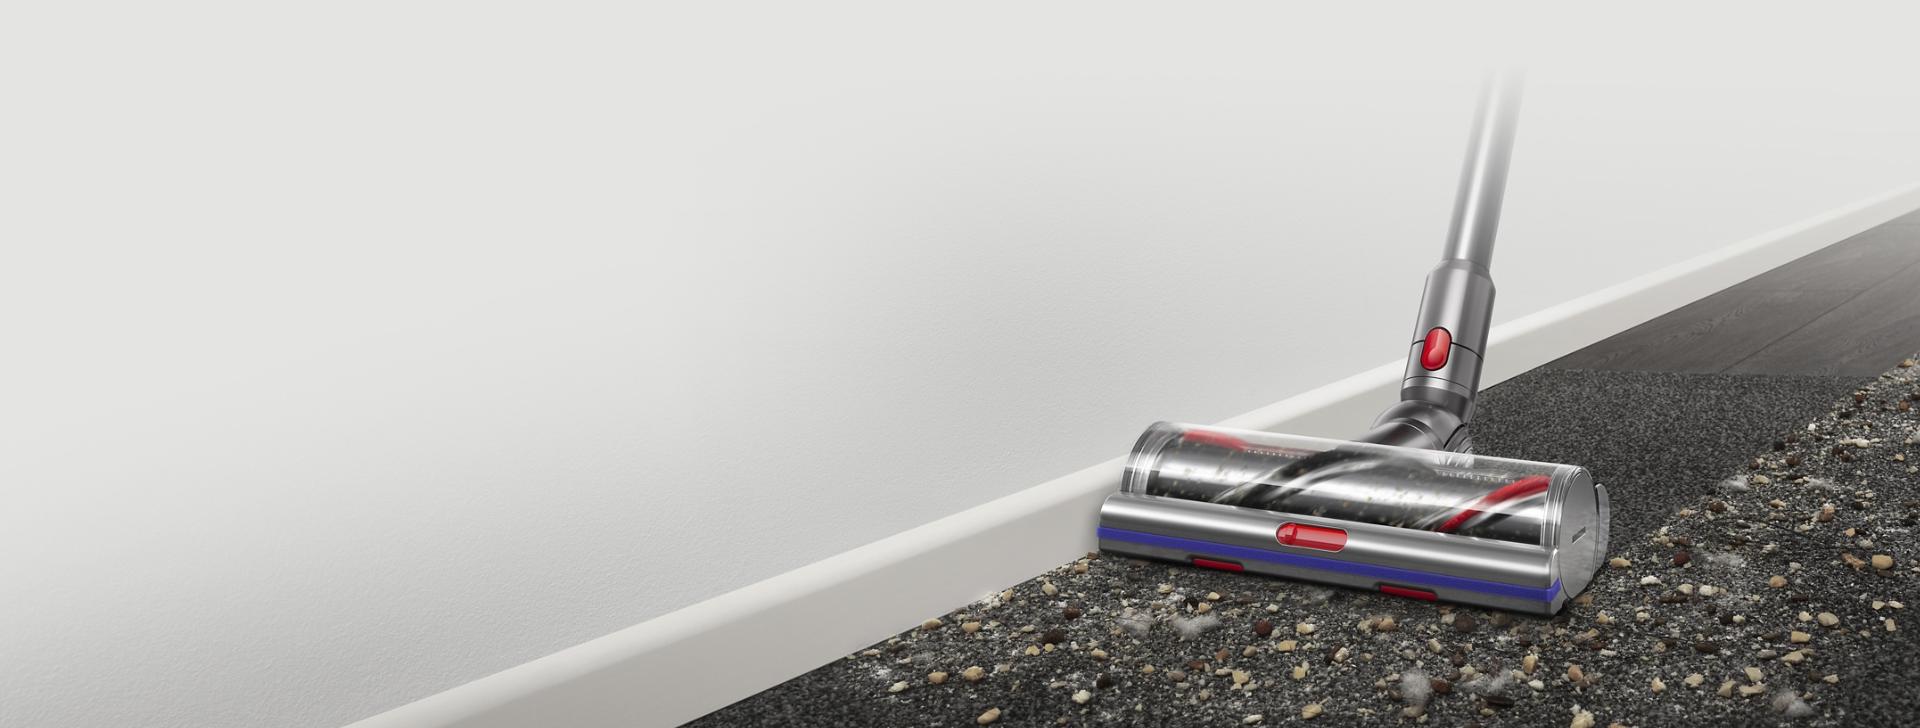 Podlahová hubica Digital MotorbarTM s technológiou proti namotávaniu vlasov na čistenie priestorov medzi tvrdou podlahou a kobercom